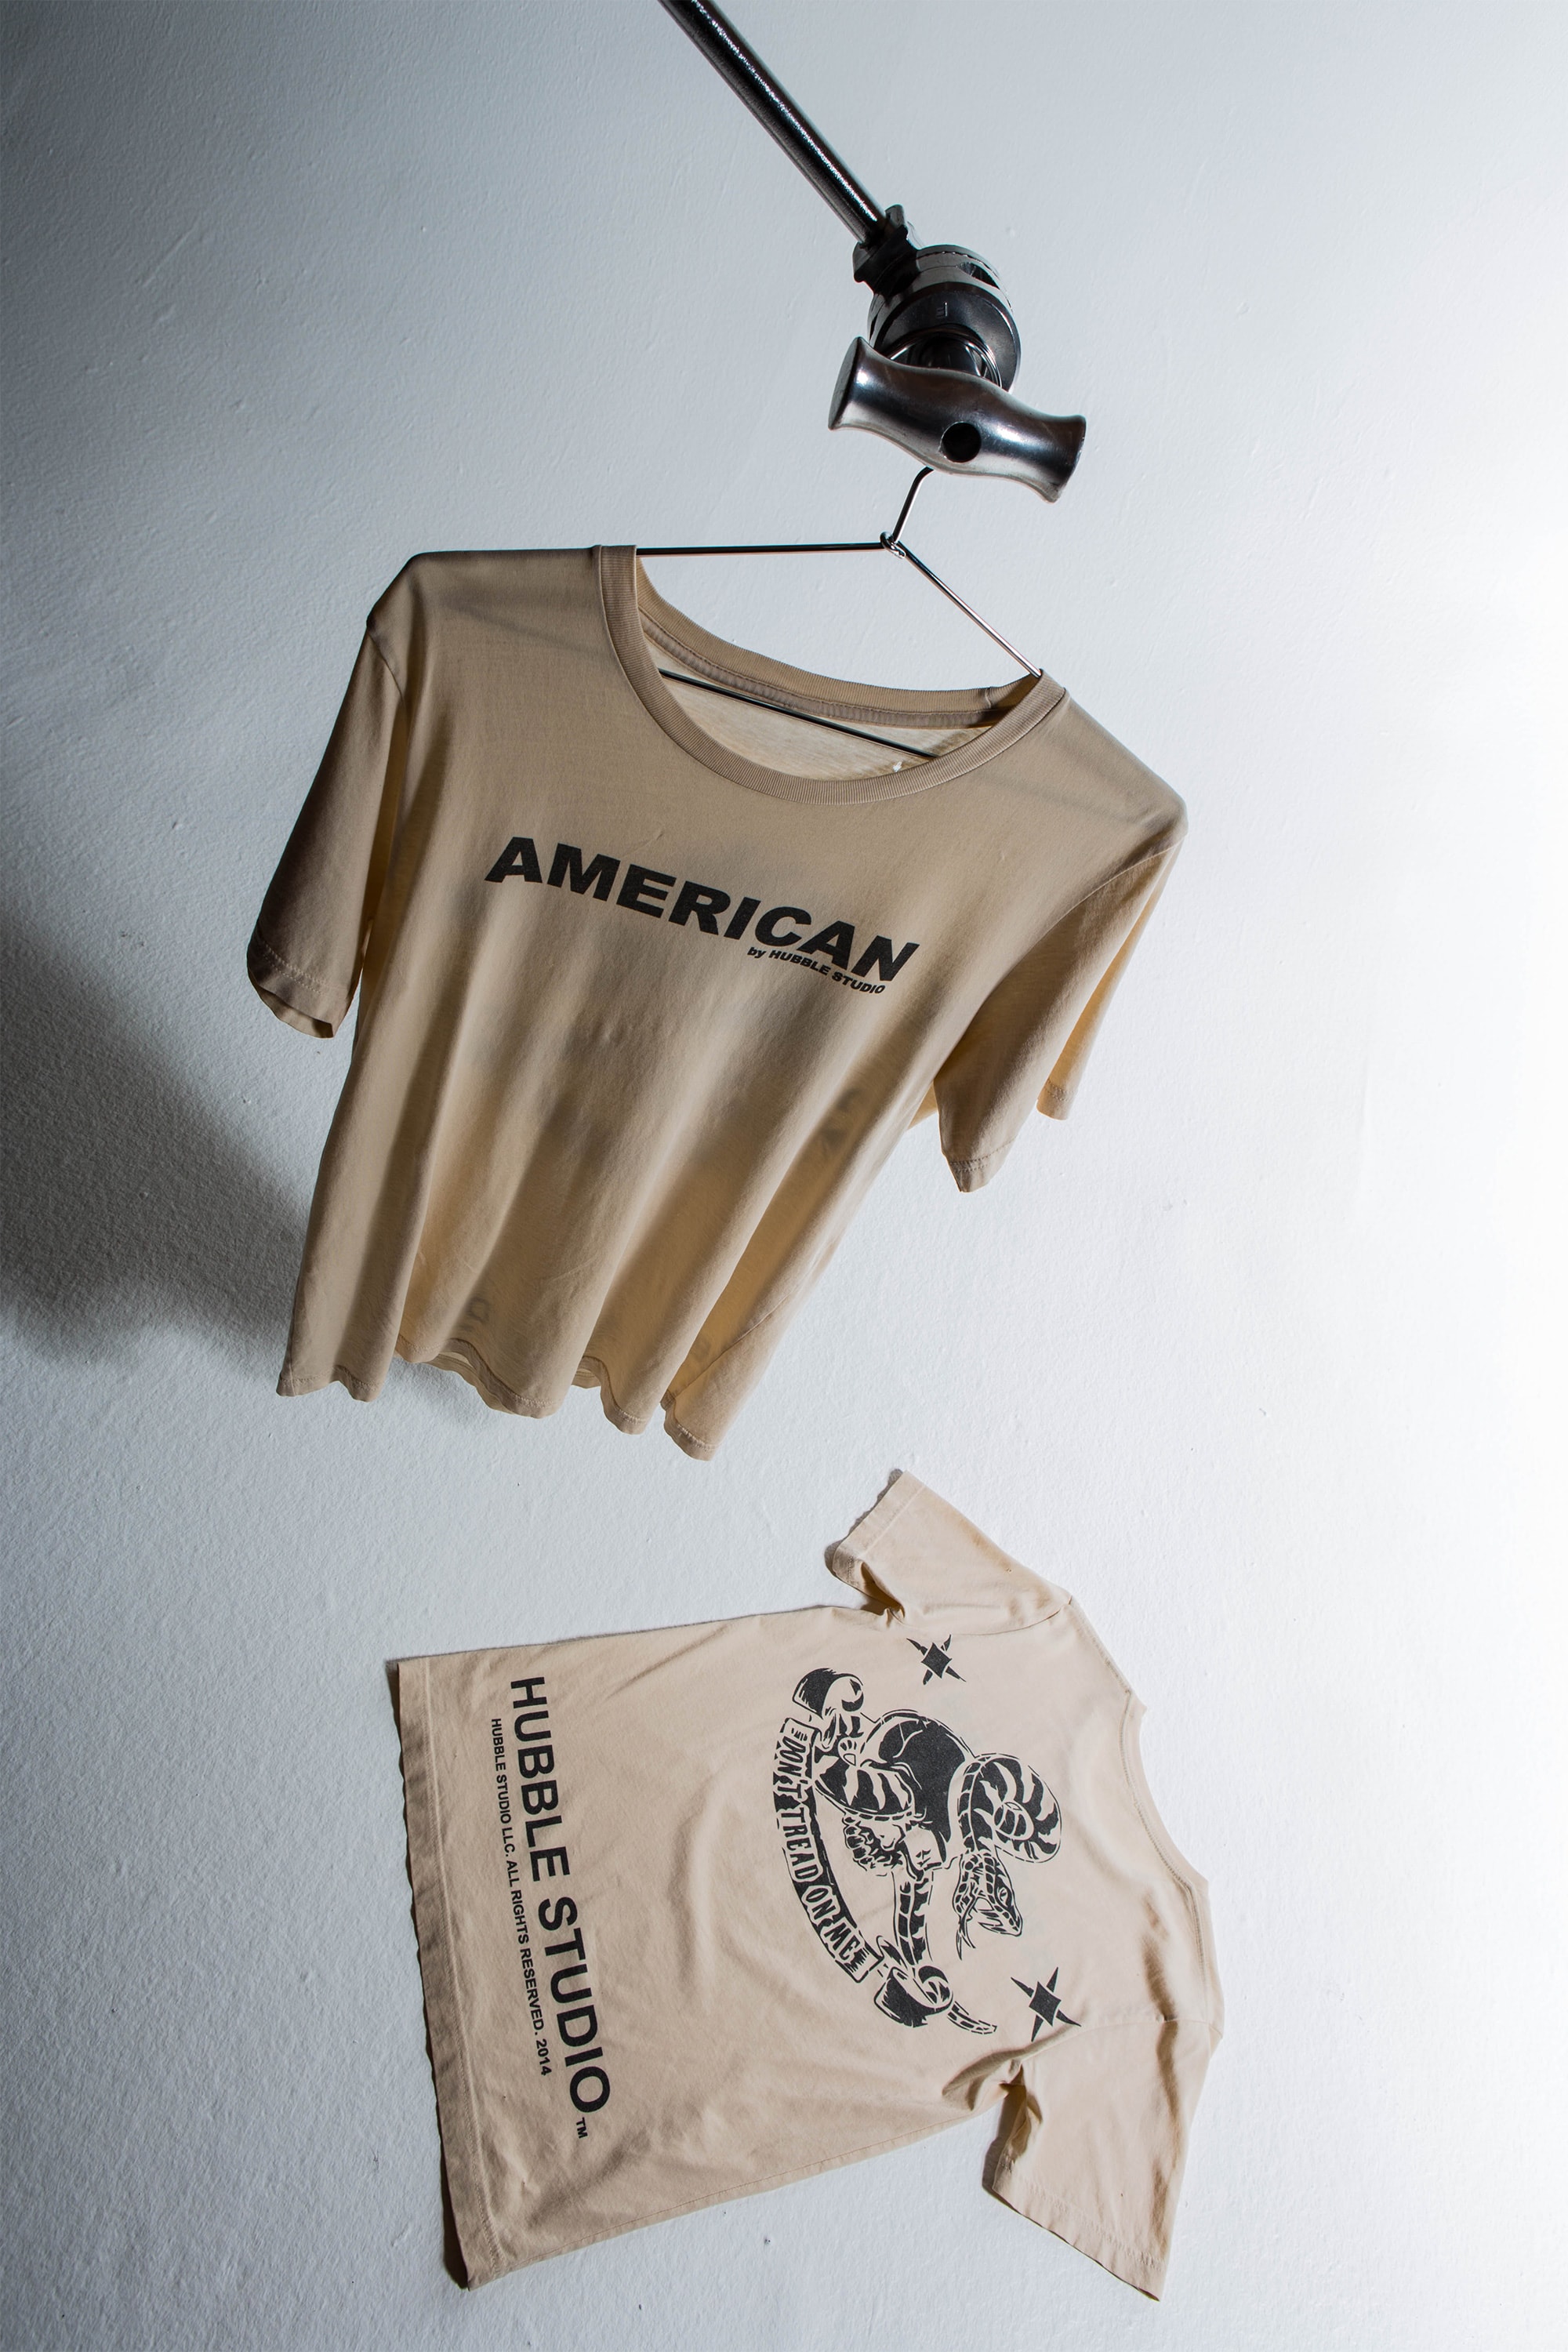 Hubble Studio This is America Inspired T-Shirt 2018 fashion childish gambino